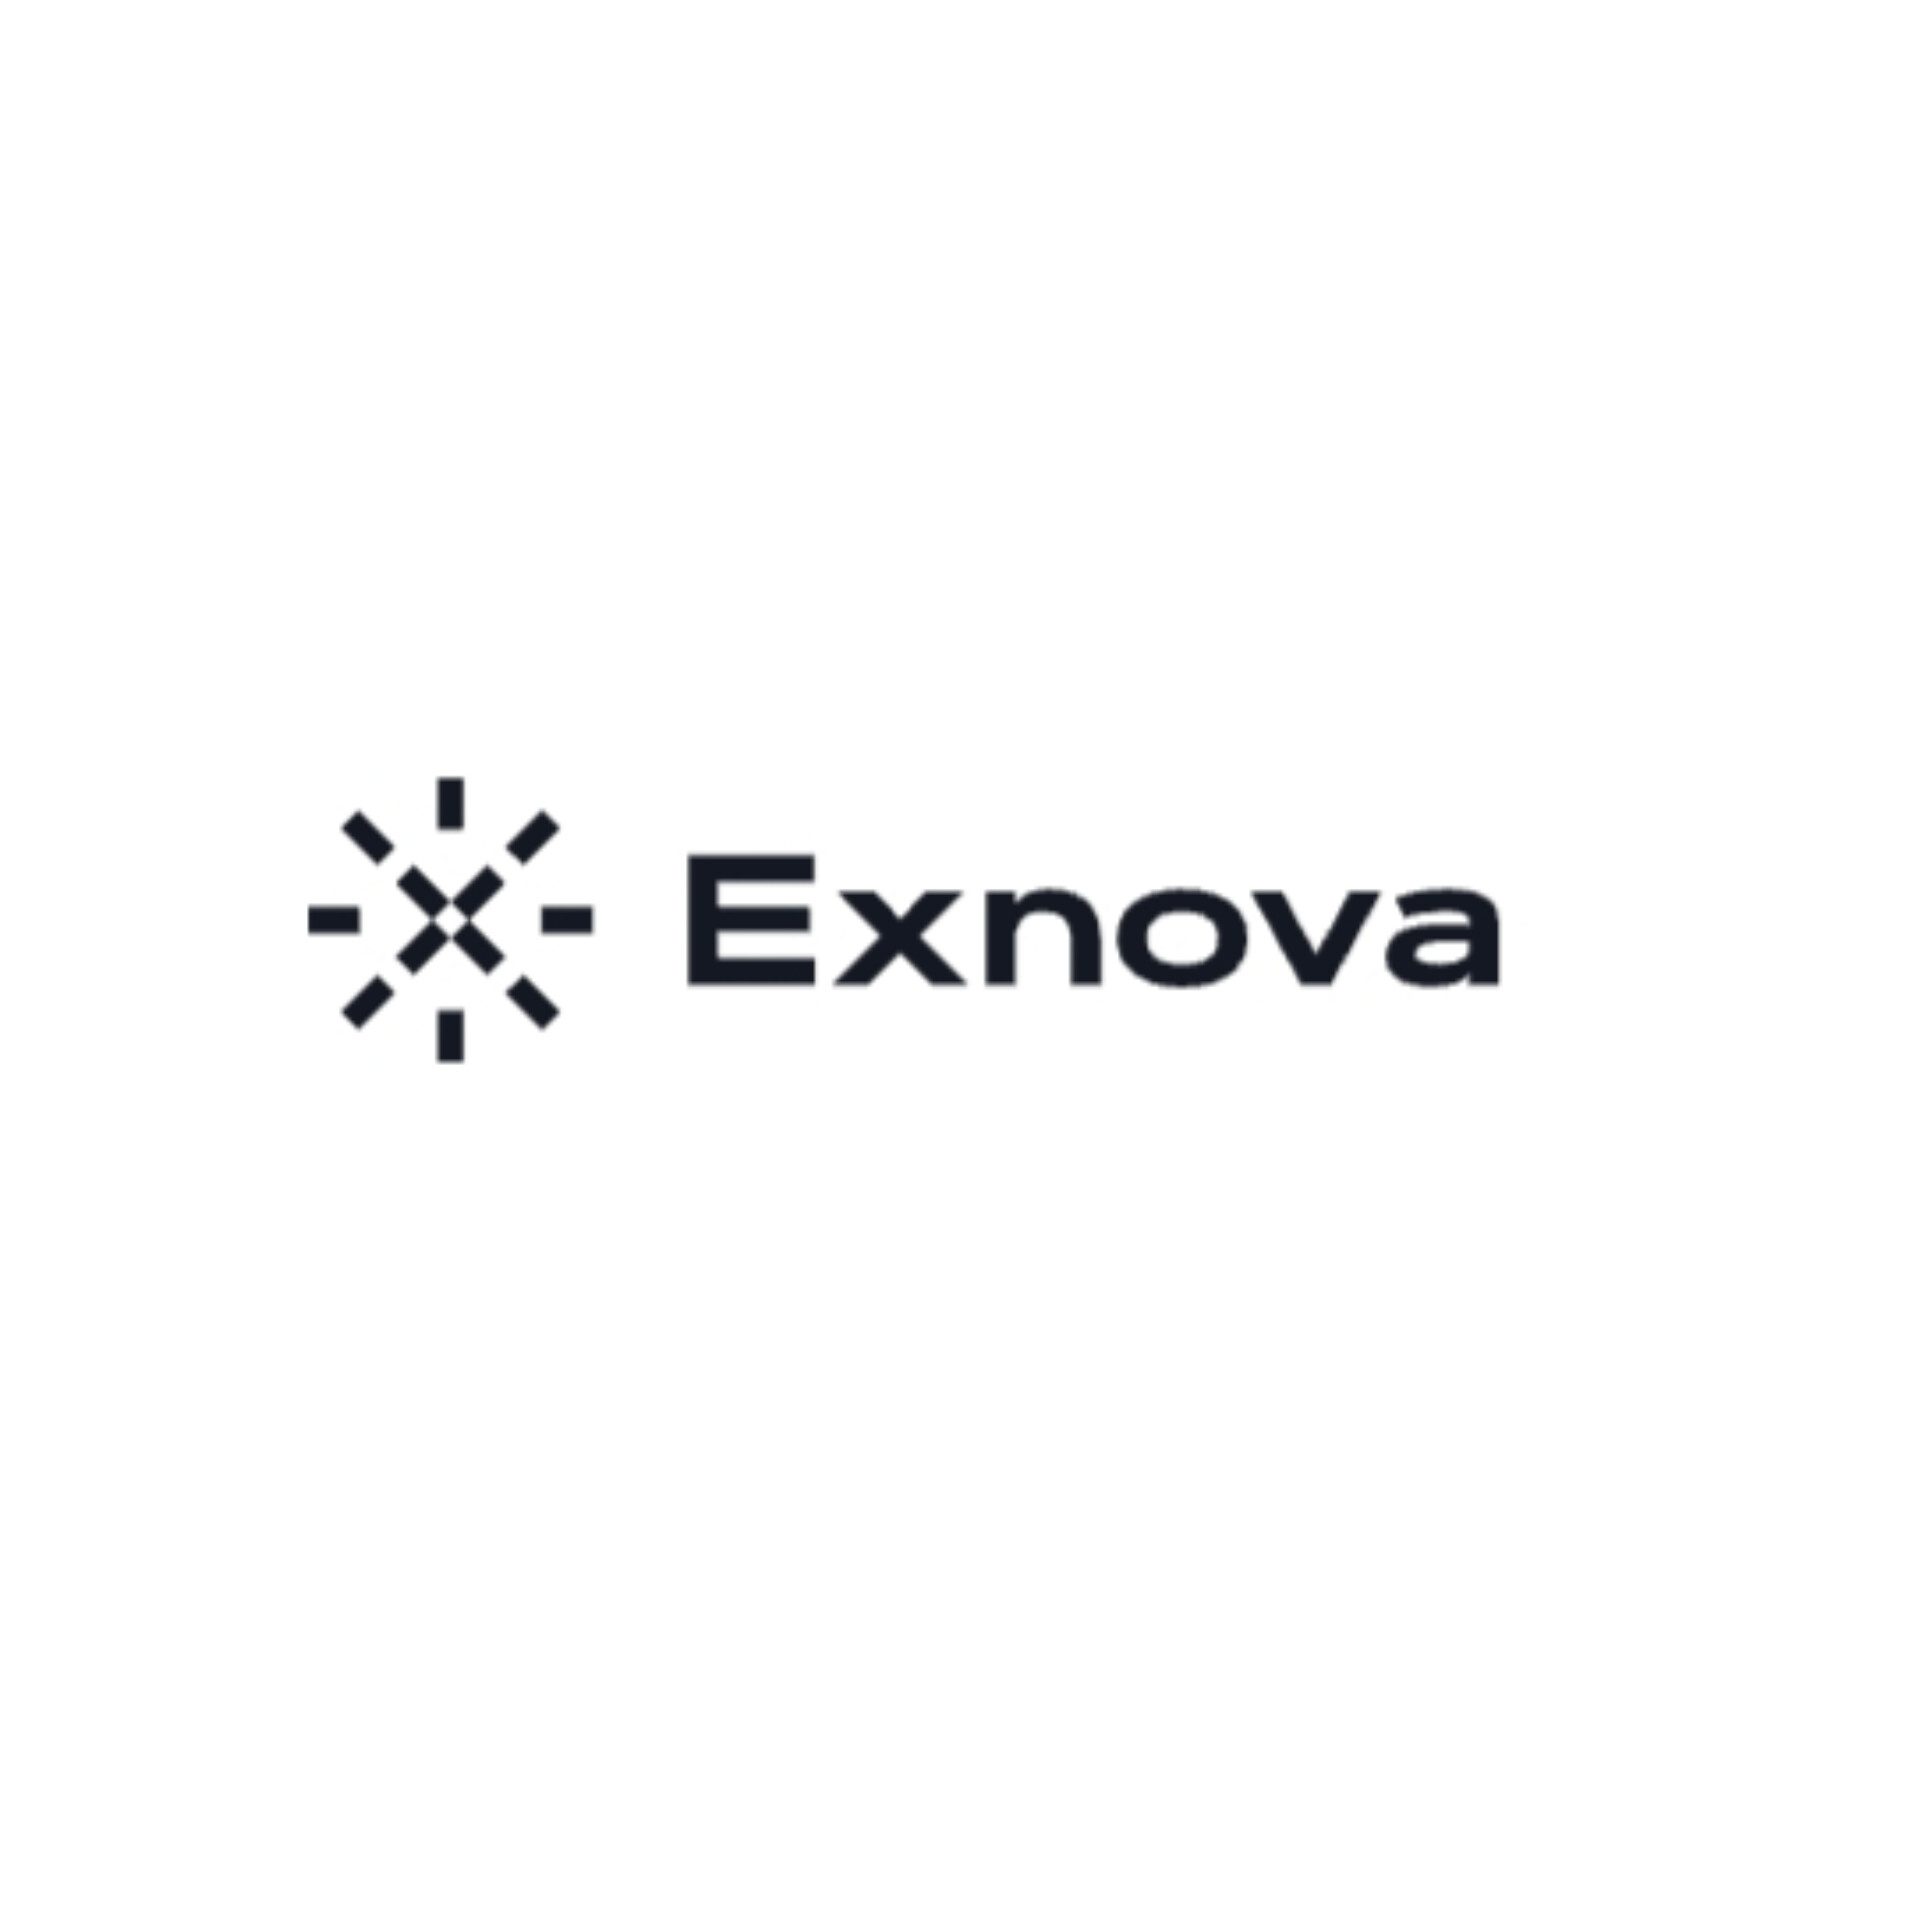 Exnova — брокерская компания